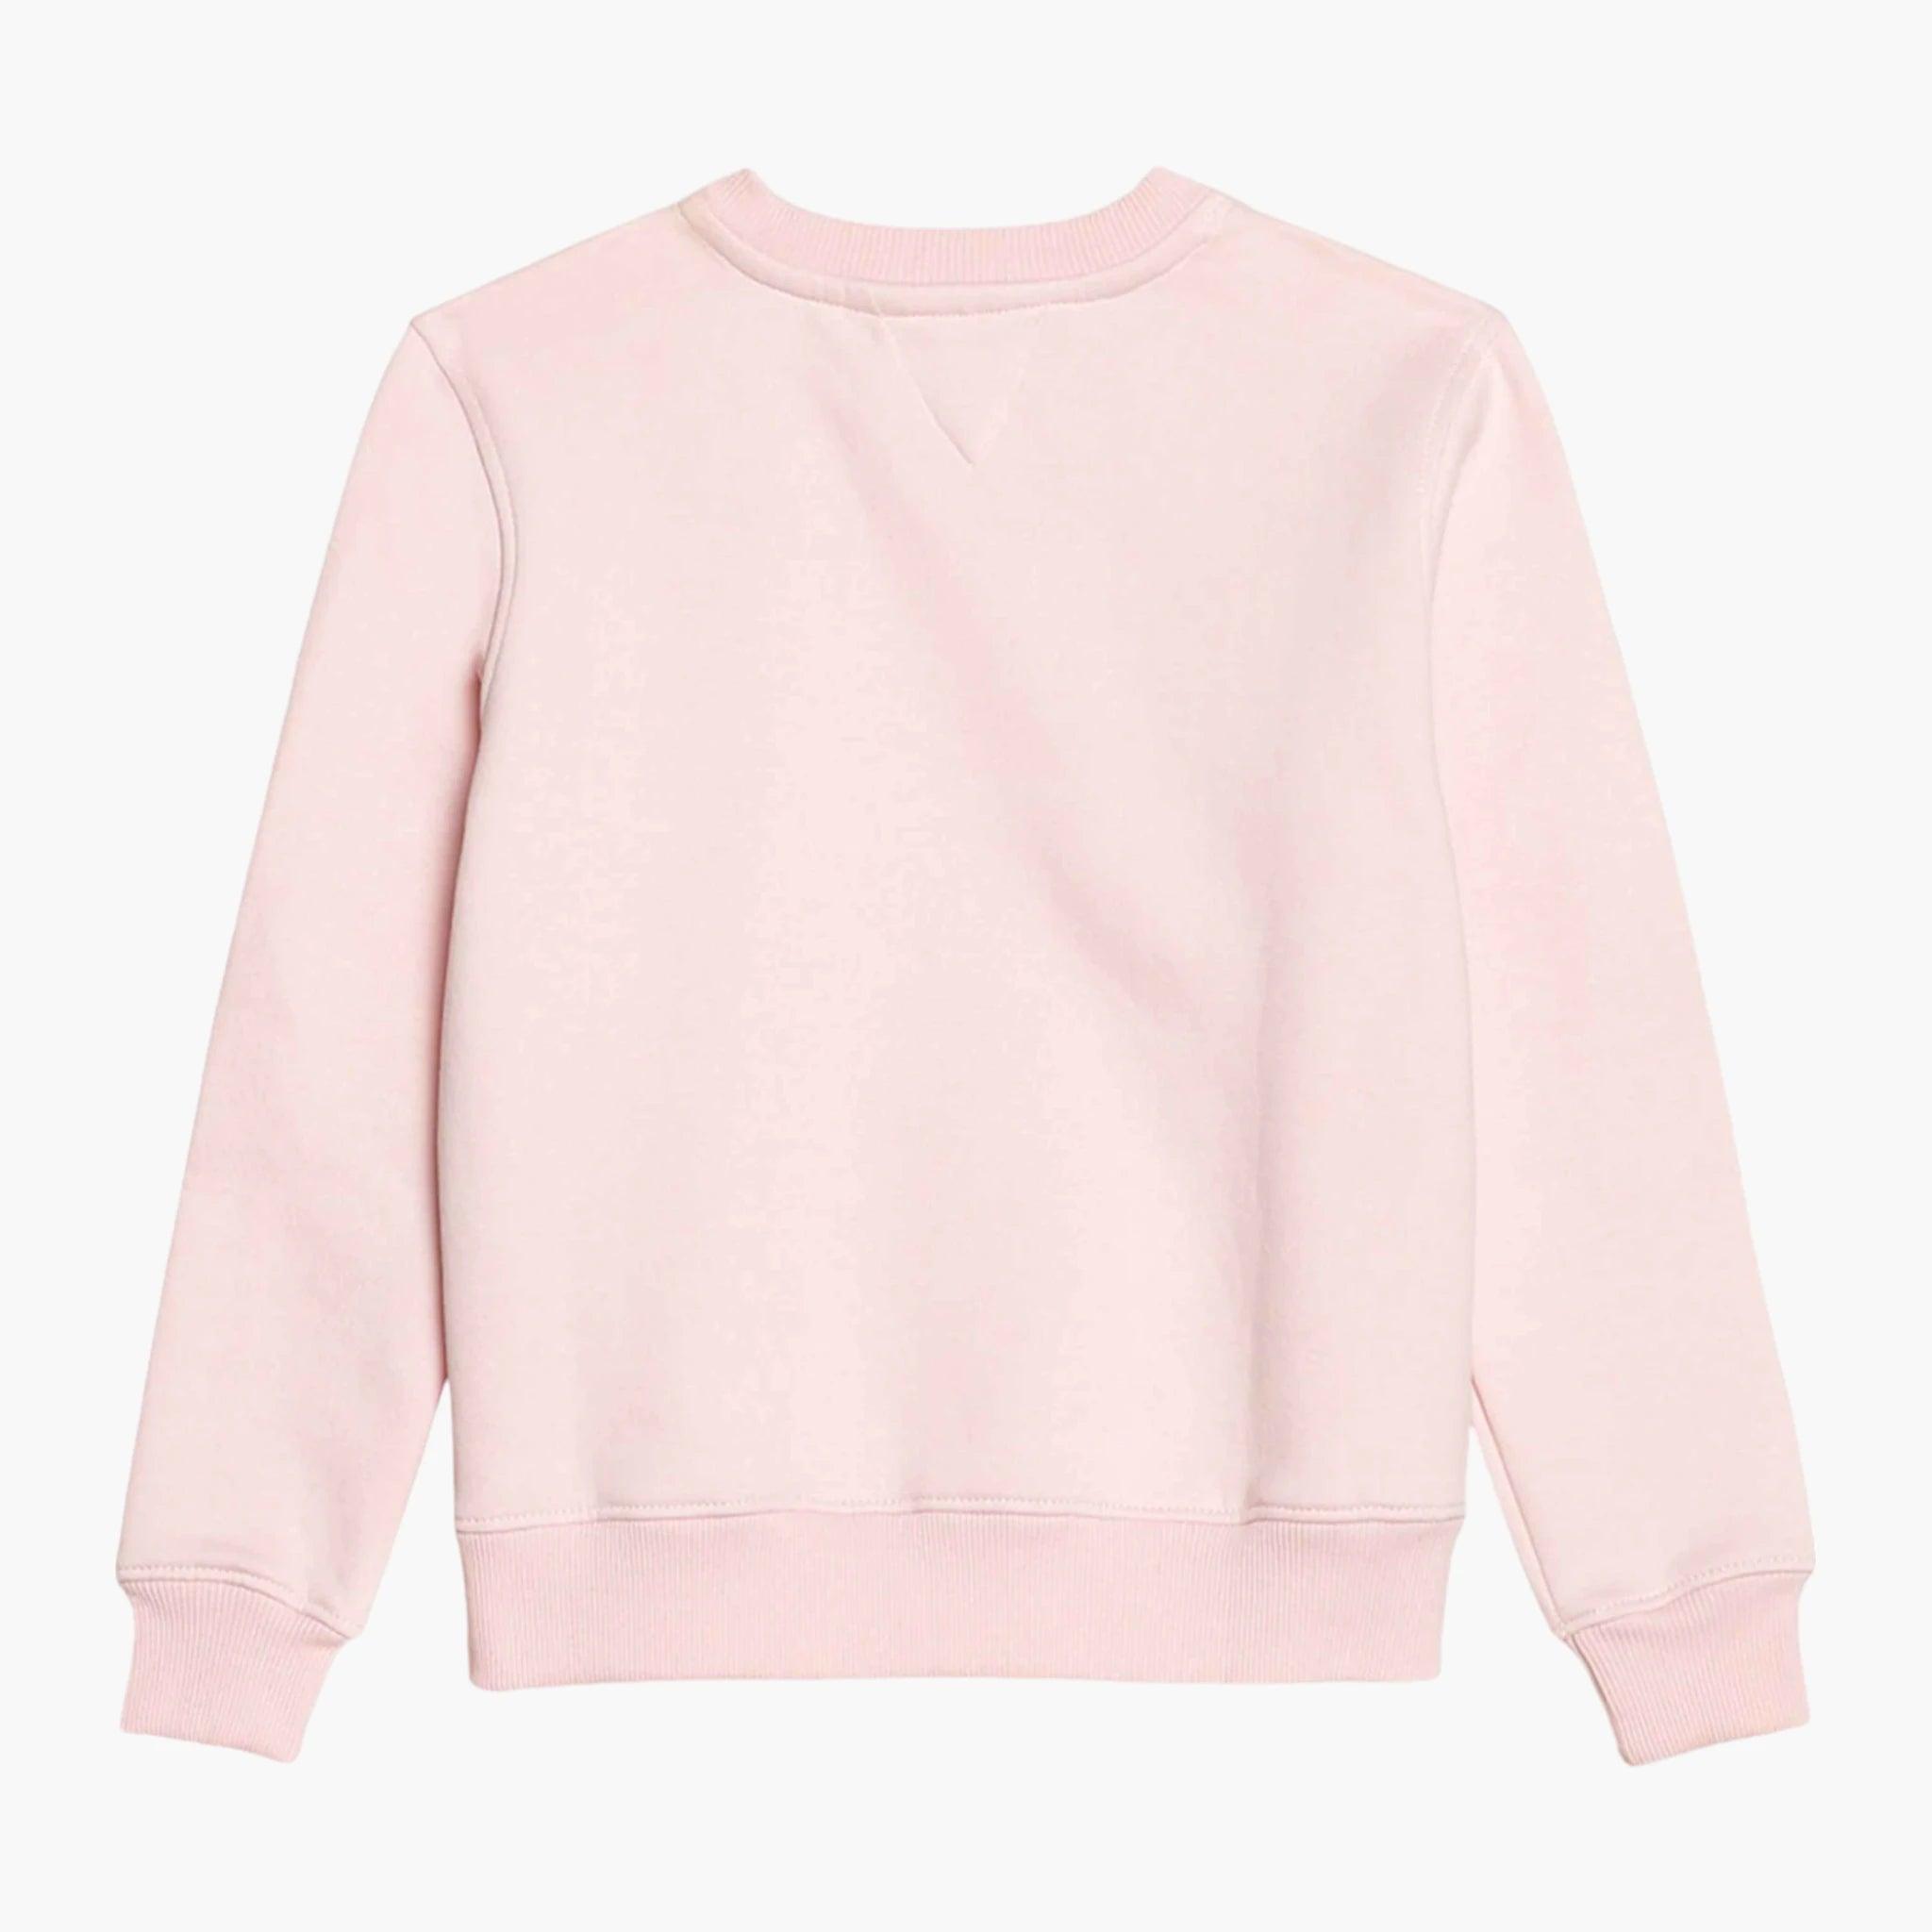 Girls Flamingo Print Sweatshirt - Guugly Wuugly